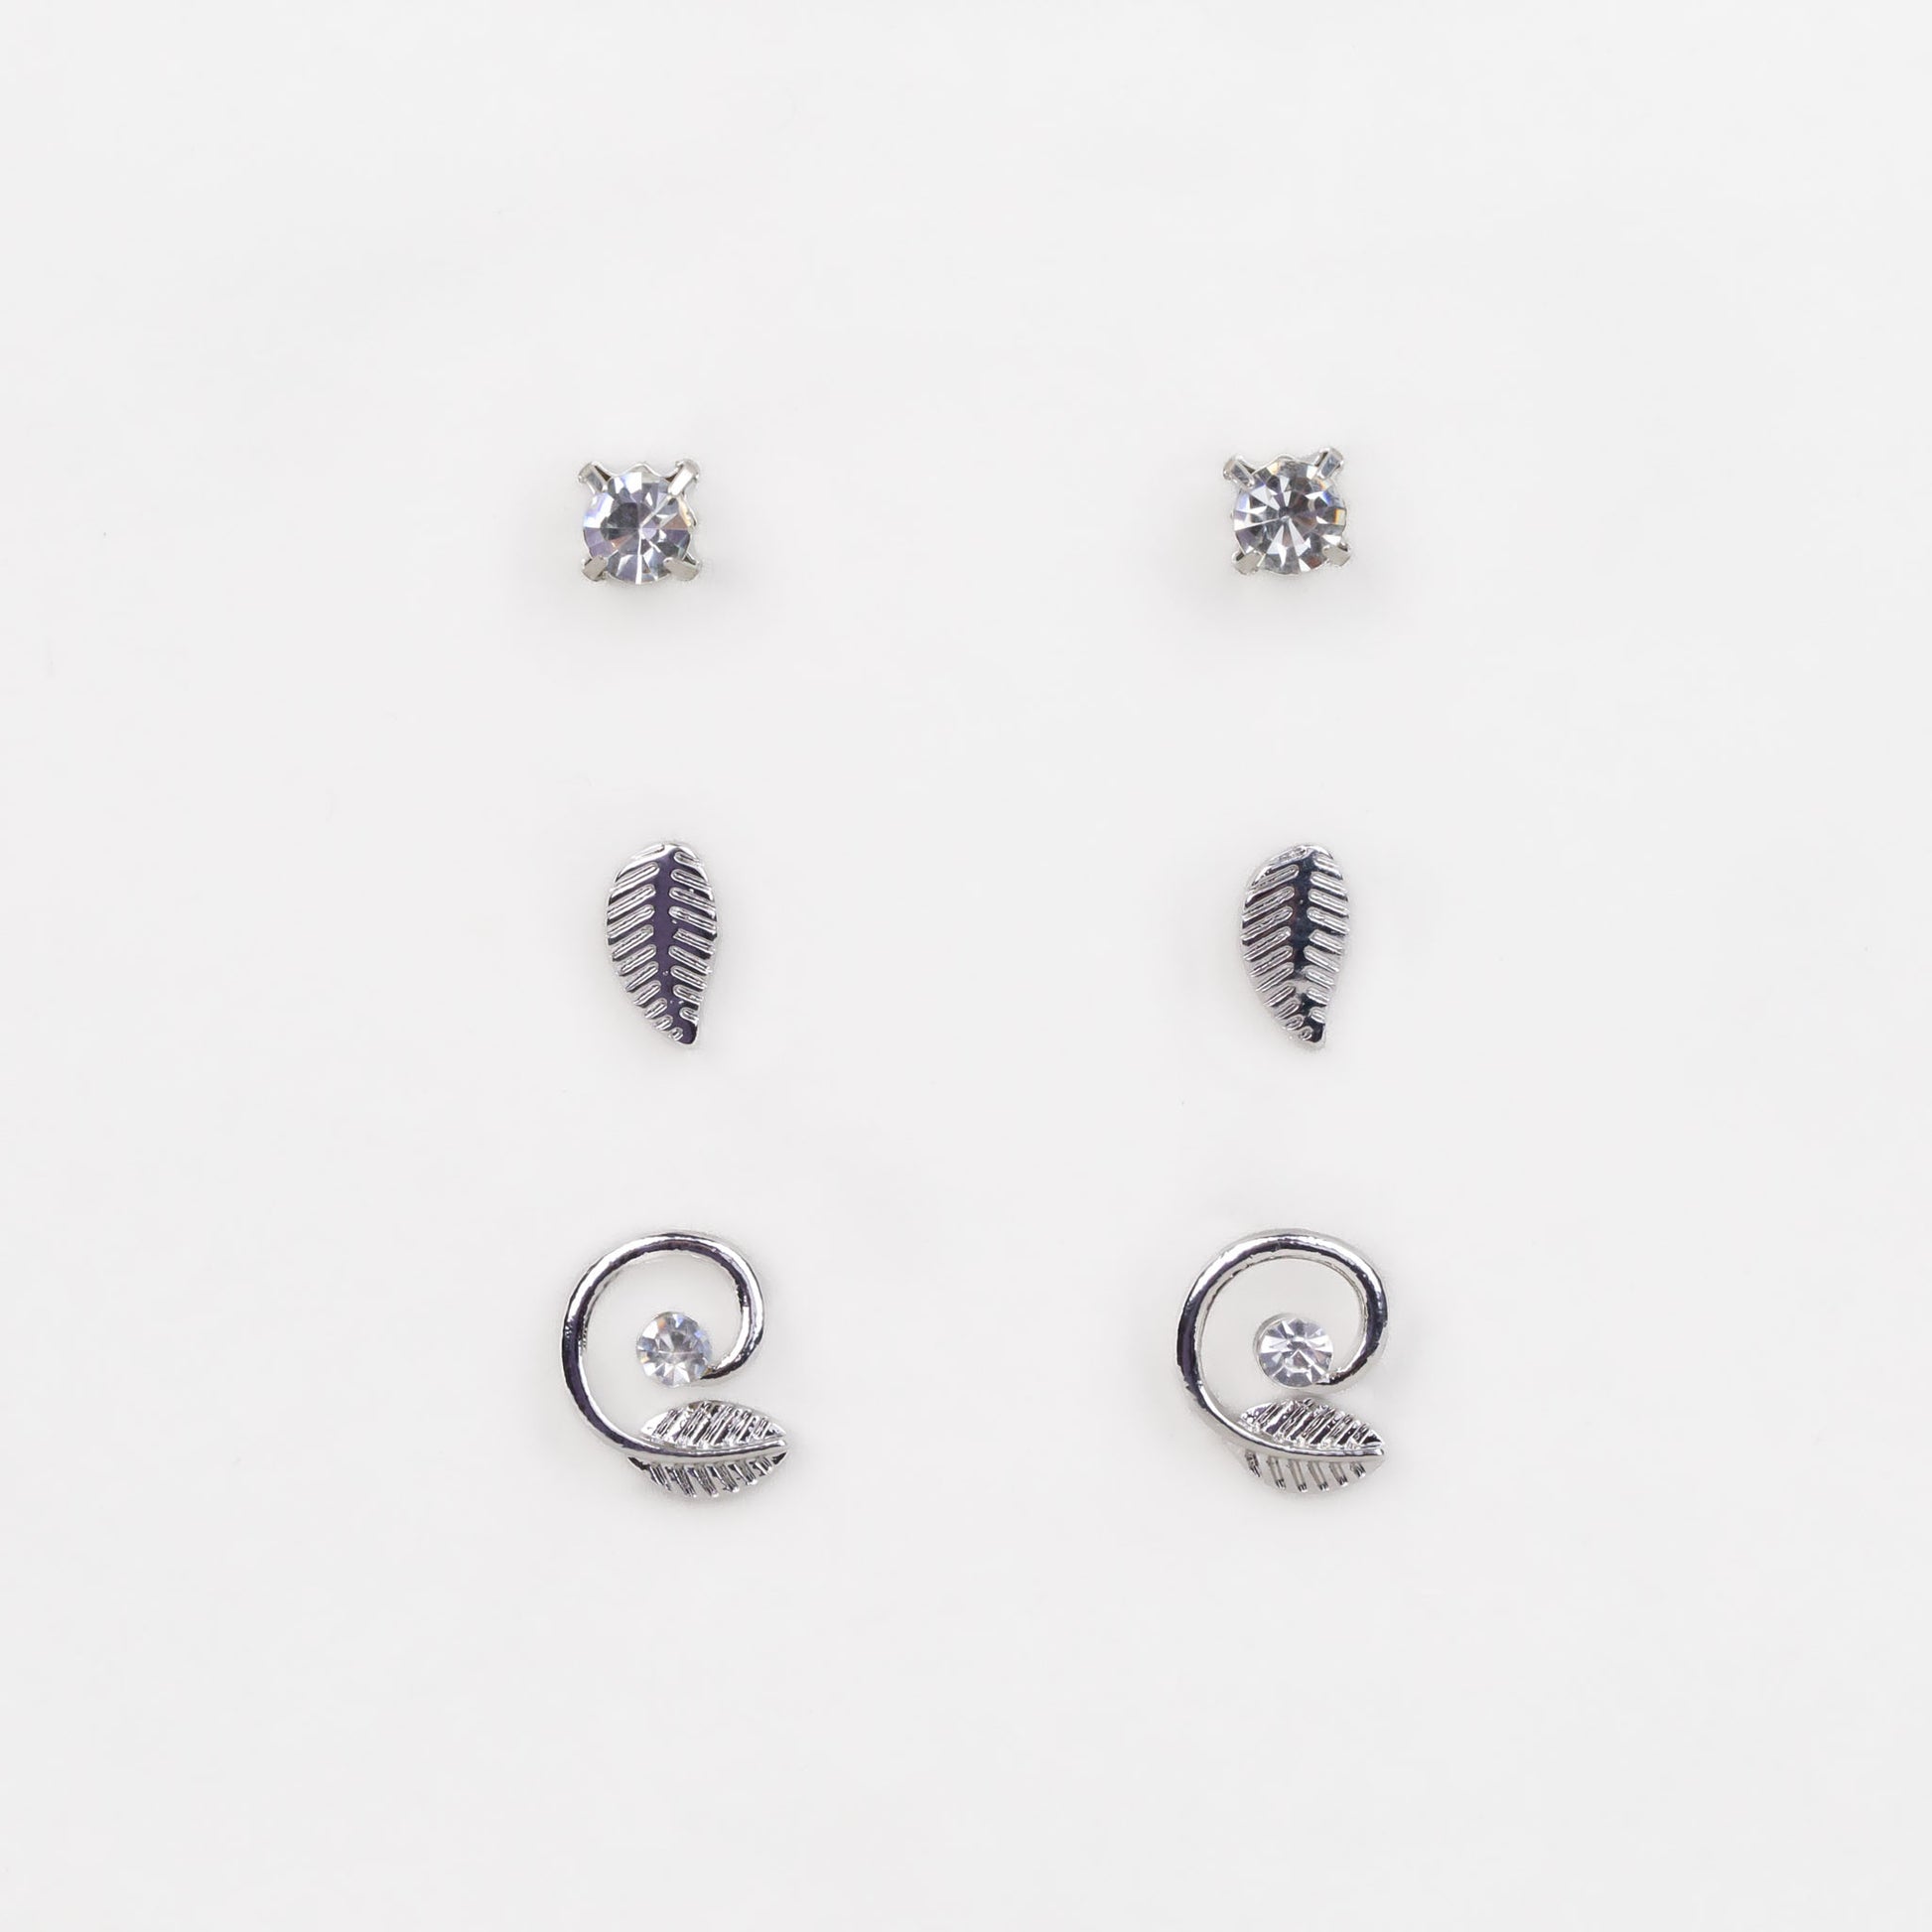 Cercei mici cu spirală, frunze și pietre, set 3 perechi - Argintiu